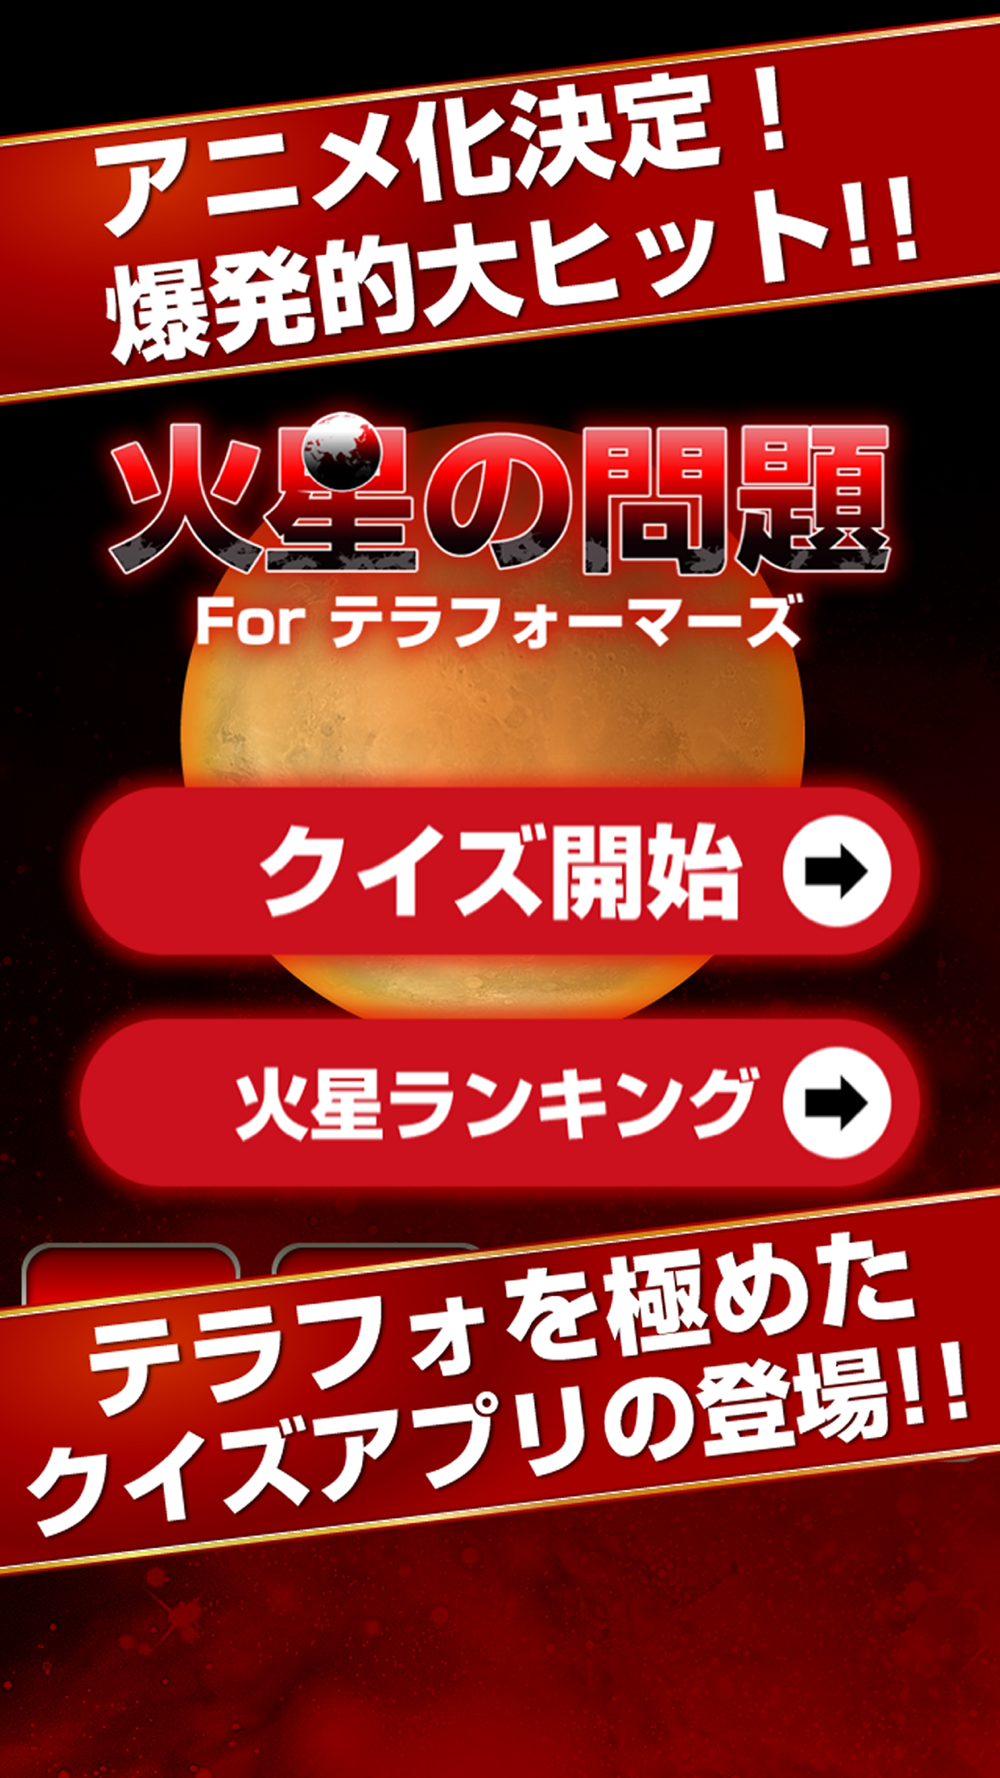 火星の問題 For テラフォーマーズ Free Download App For Iphone Steprimo Com